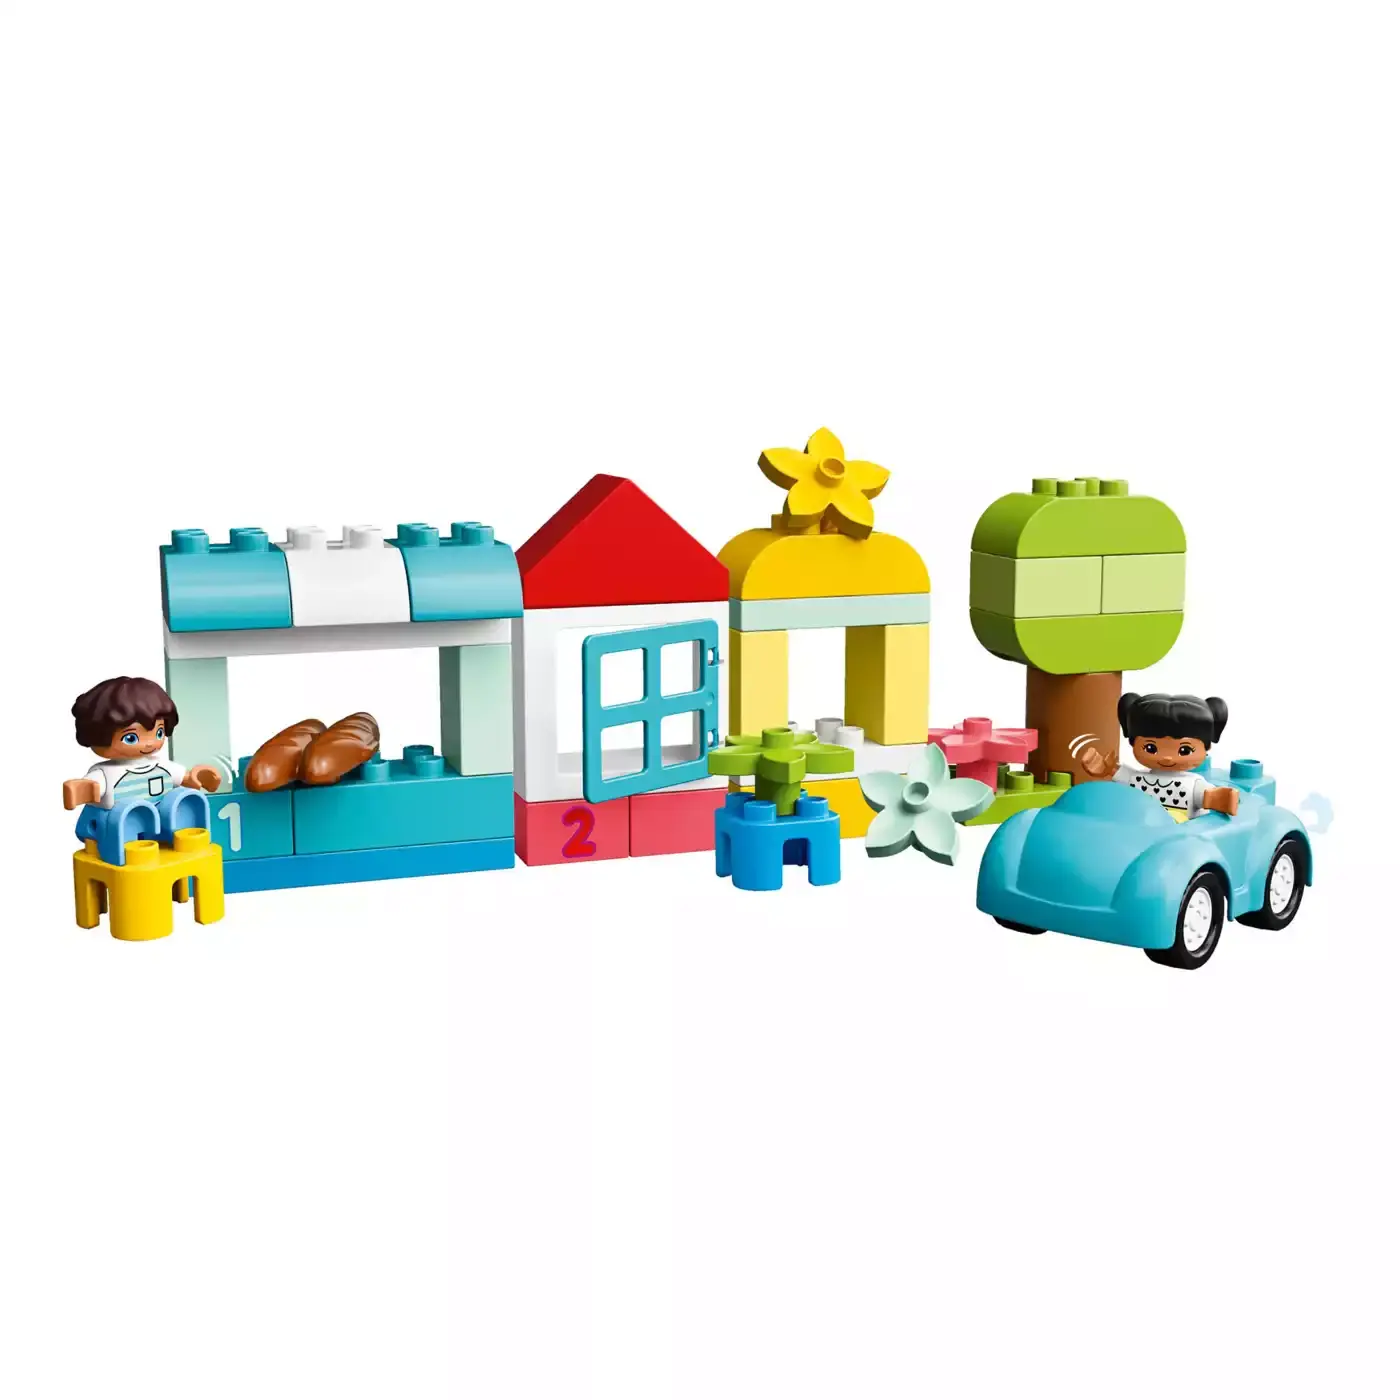 Steinebox LEGO duplo 2000579385902 1